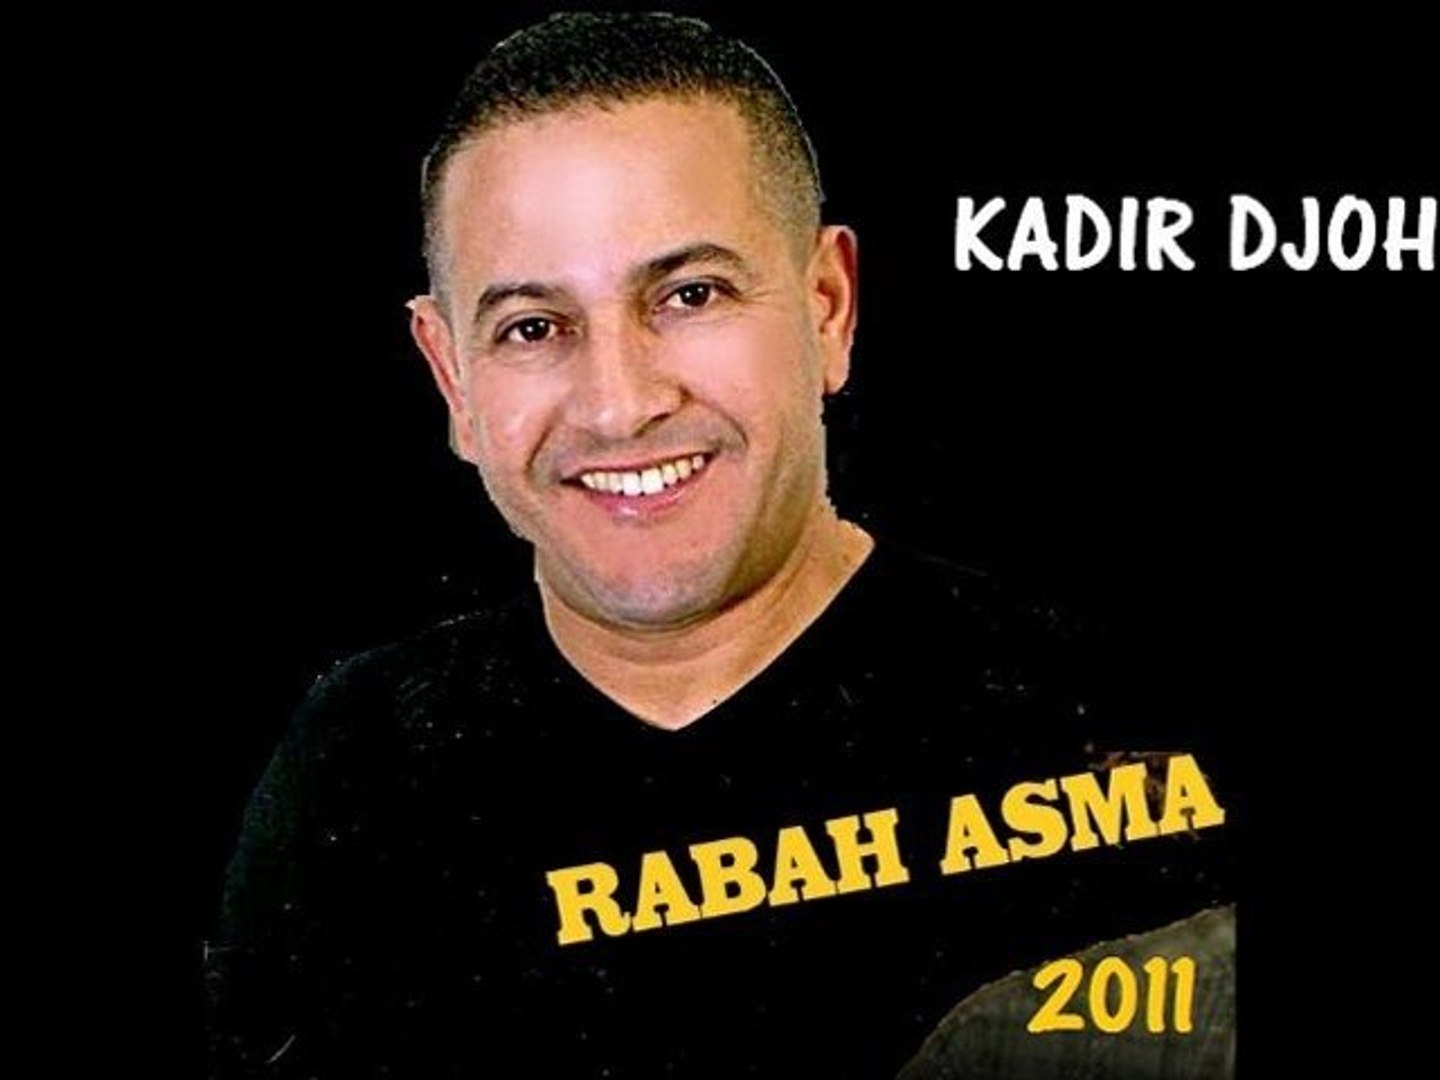 TUBE KABYLE RABAH ASMA 2011 "TROP TARD" REMIX KADIR DJOHNS - Vidéo  Dailymotion